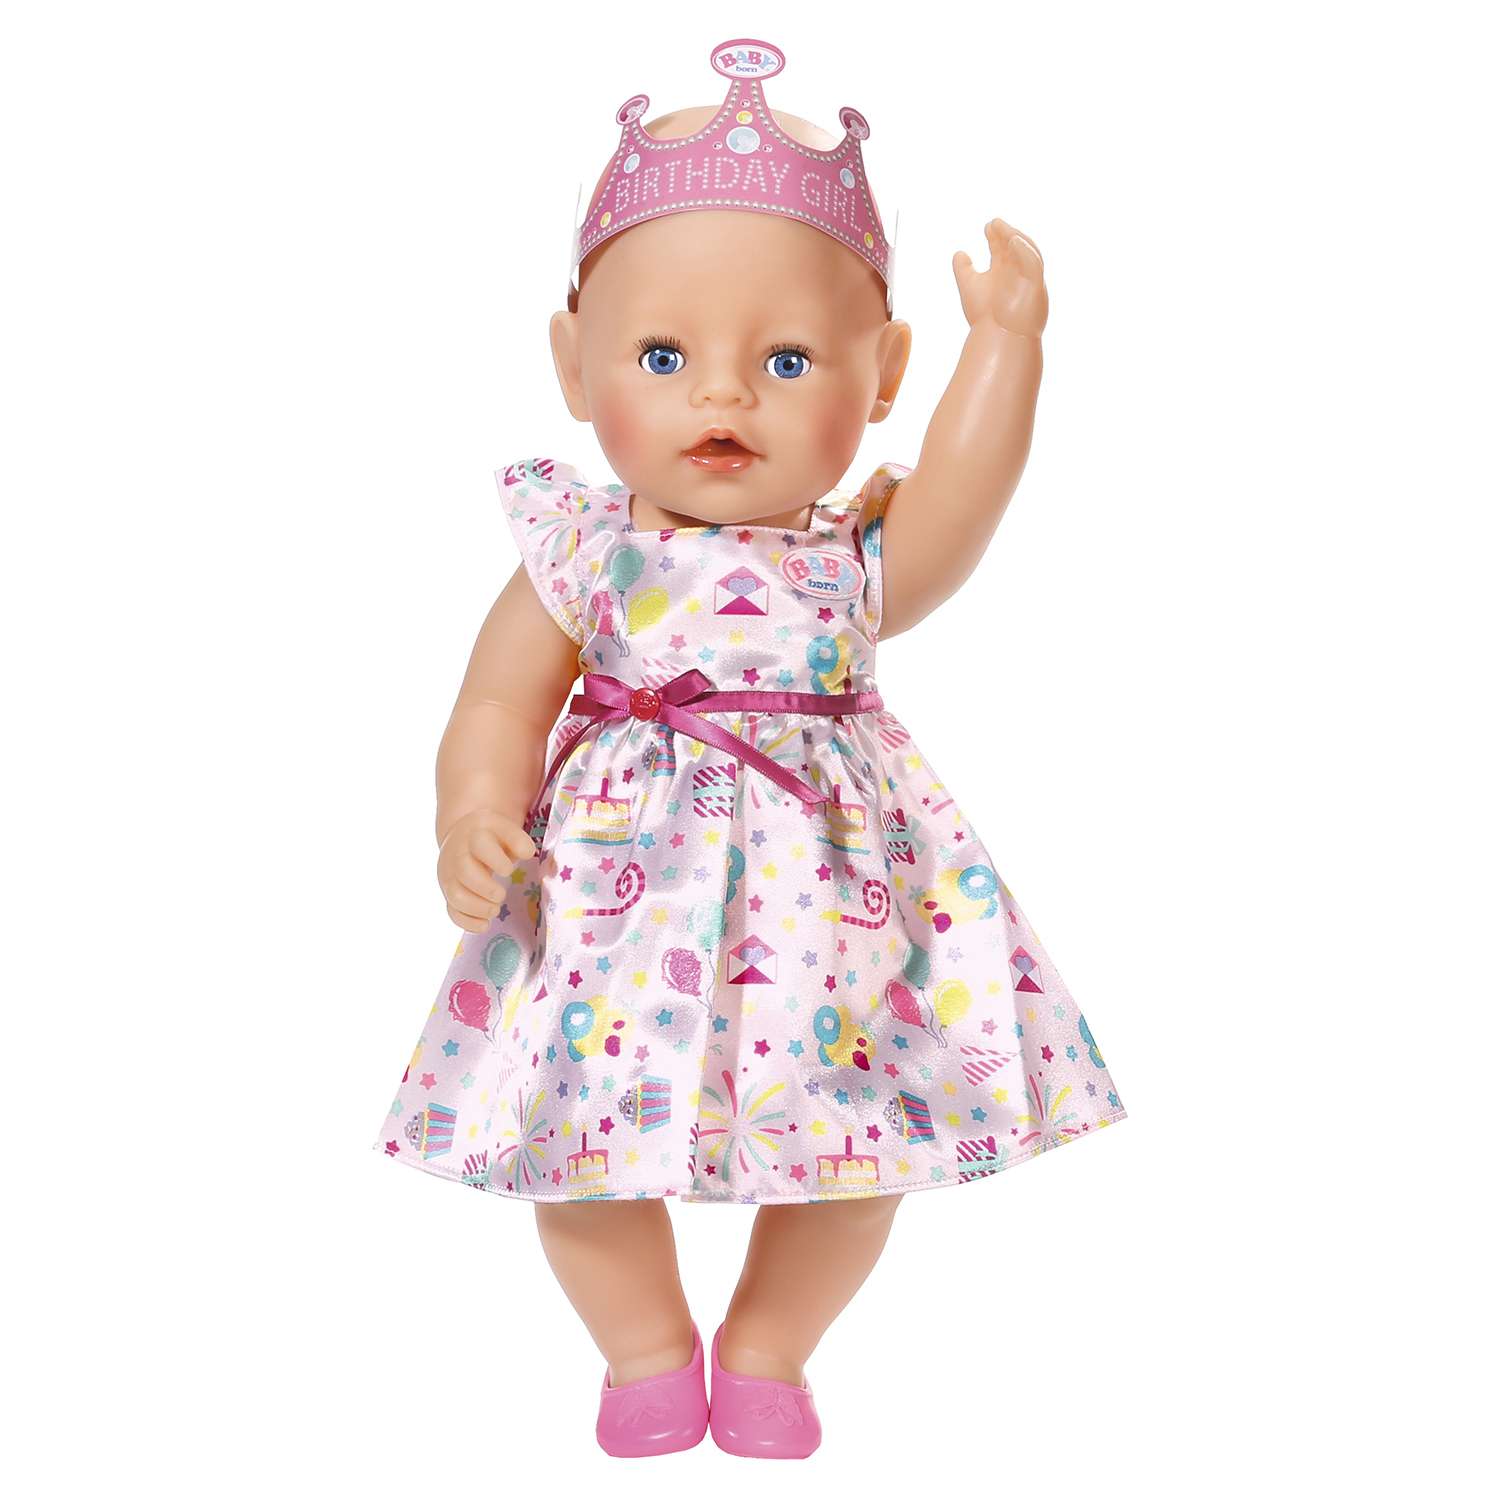 Набор для куклы Zapf Creation Baby born Для празднования Дня рождения 825-242 825-242 - фото 4